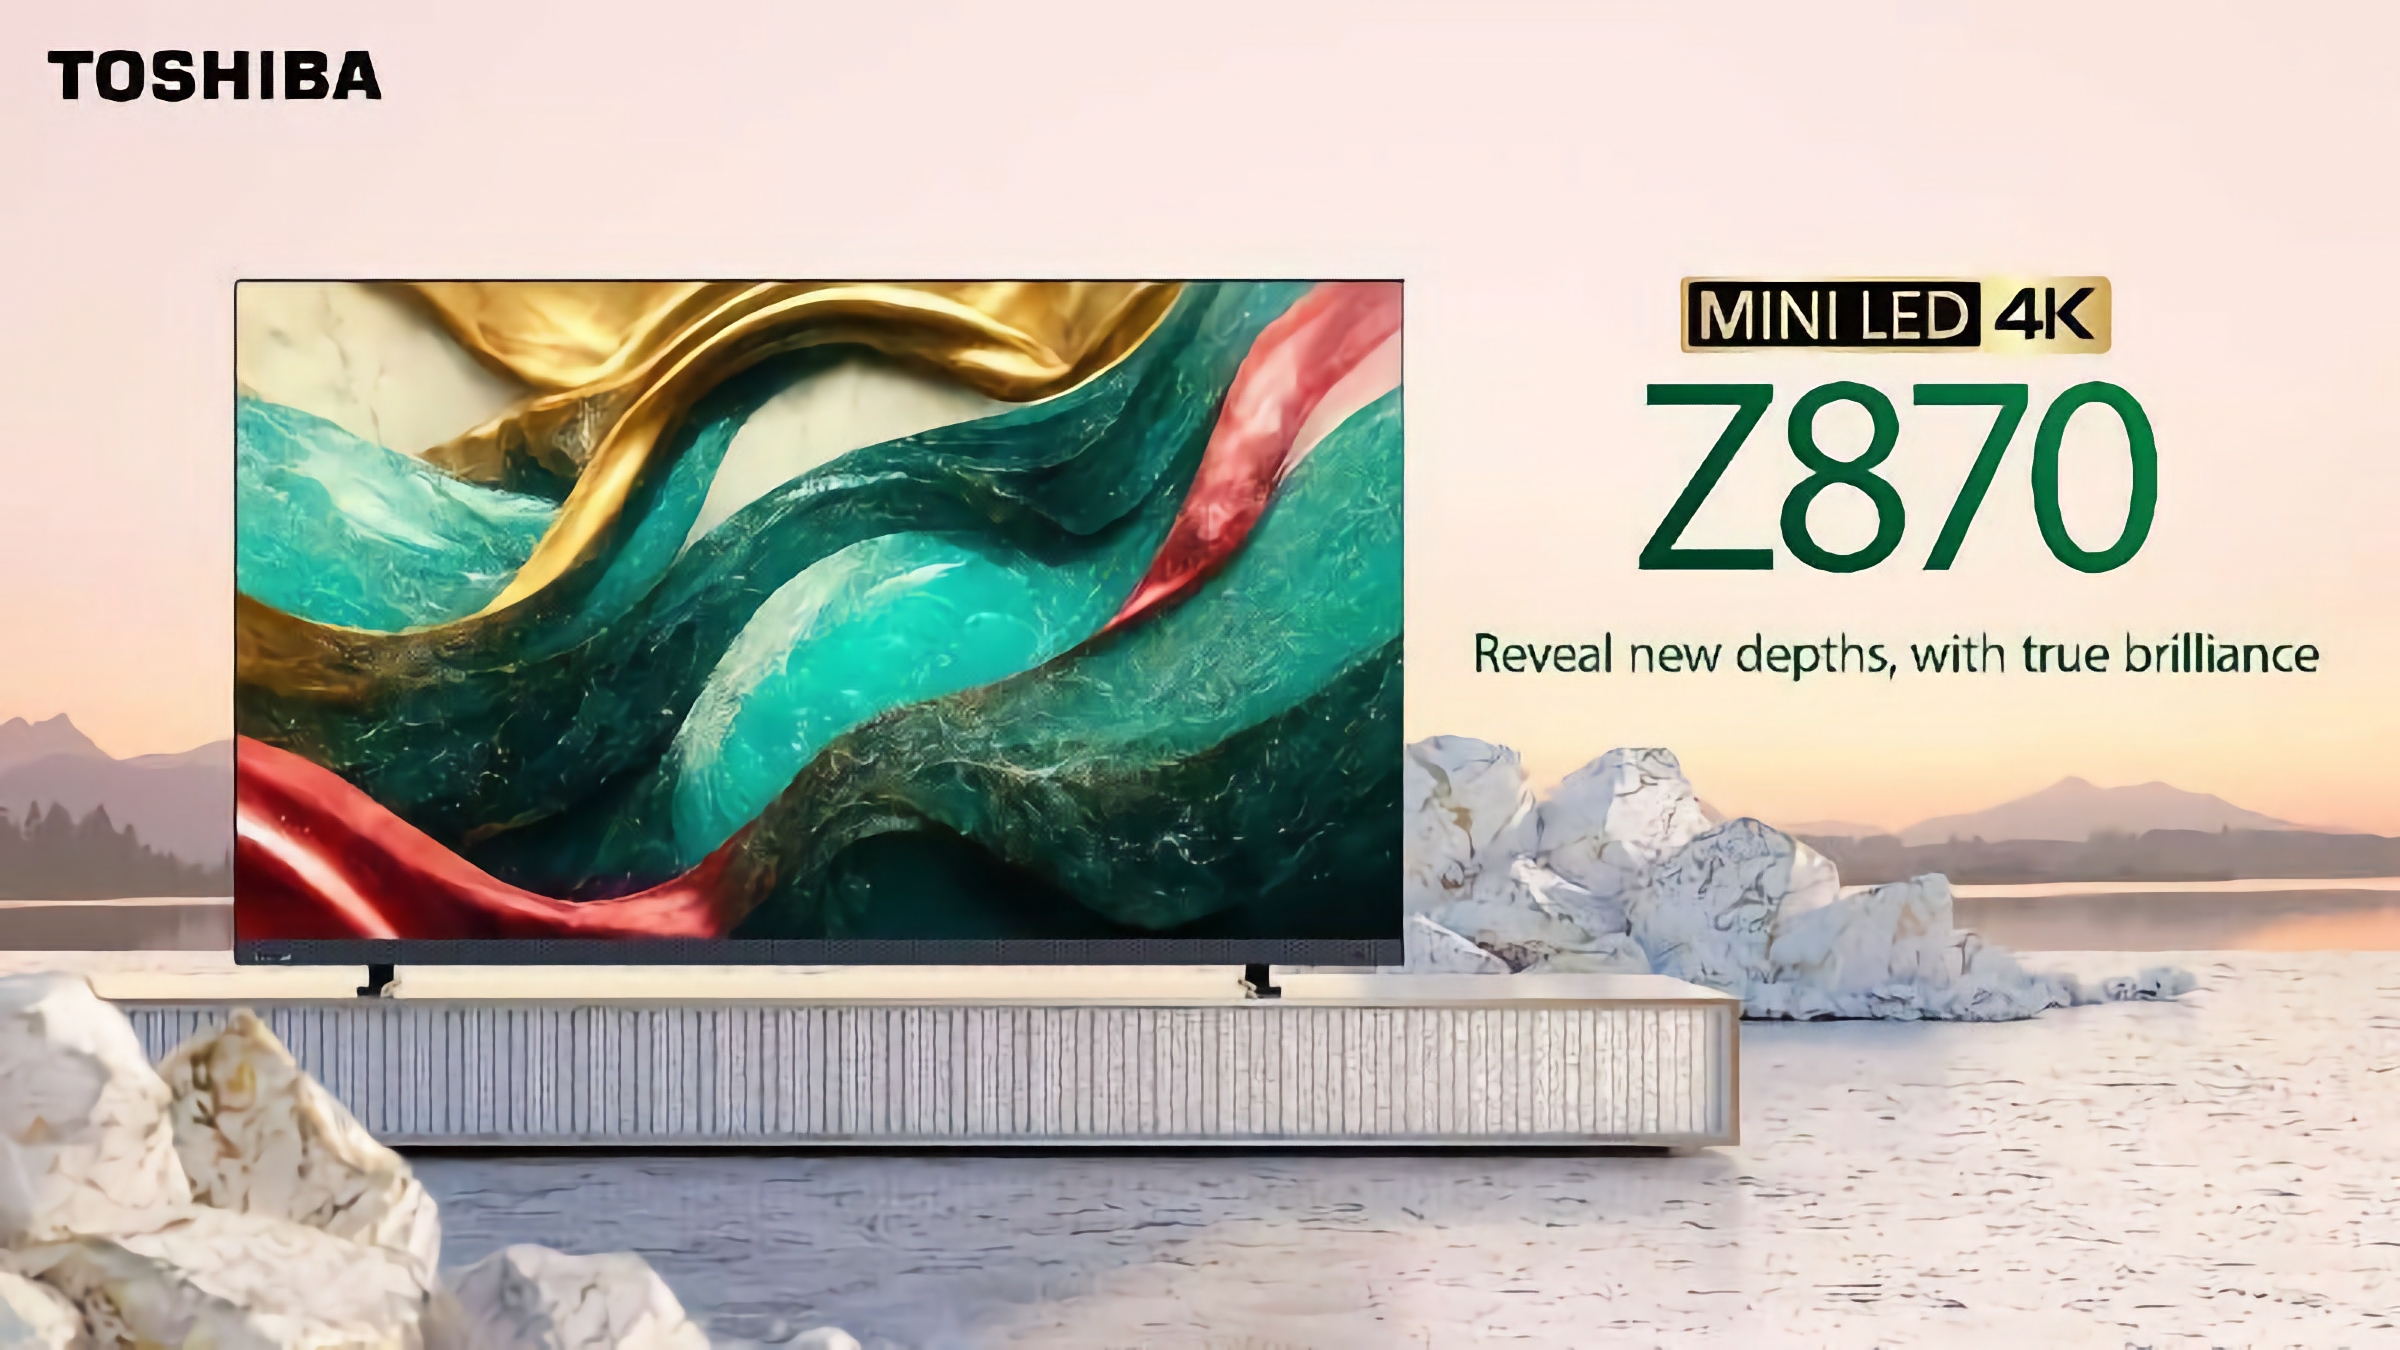 Toshiba Z870 MiniLED 4K Gaming TV: Una gama gaming de televisores inteligentes con soporte de 144 Hz y tecnología AMD FreeSync